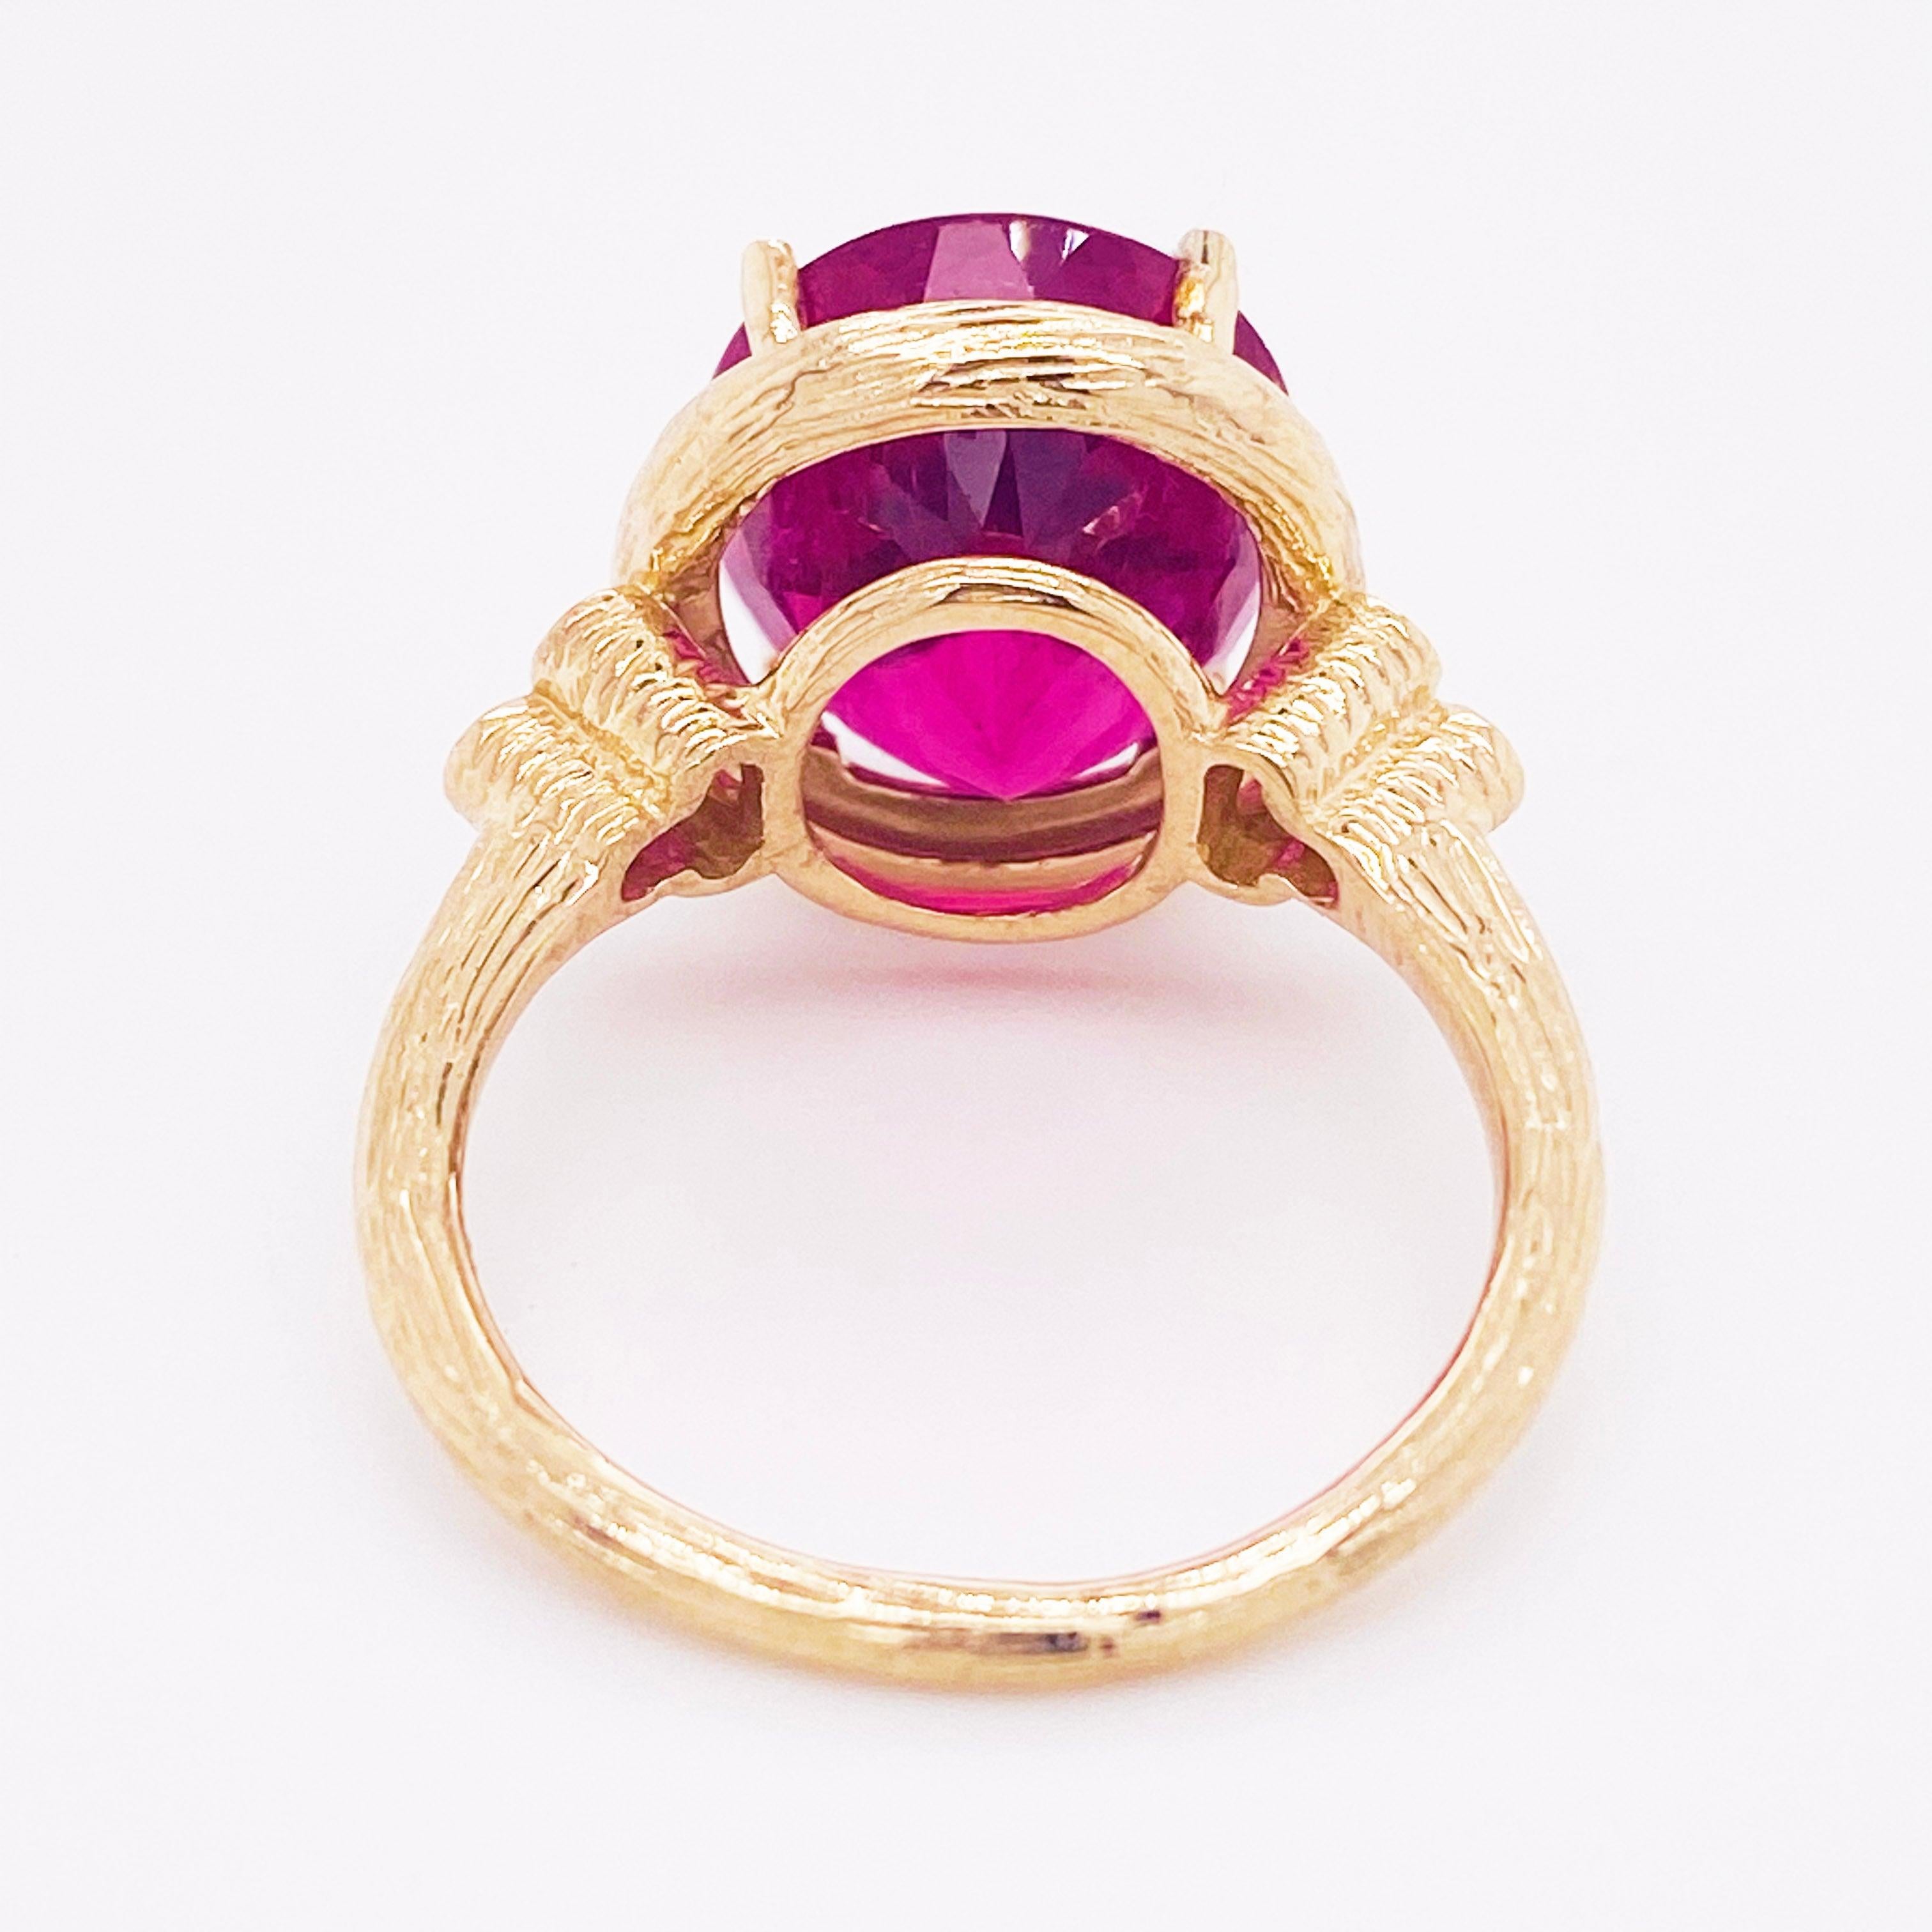 Tourmaline Diamond Ring, 14 Karat Yellow Gold, Pink, Rubellite, Statement 6